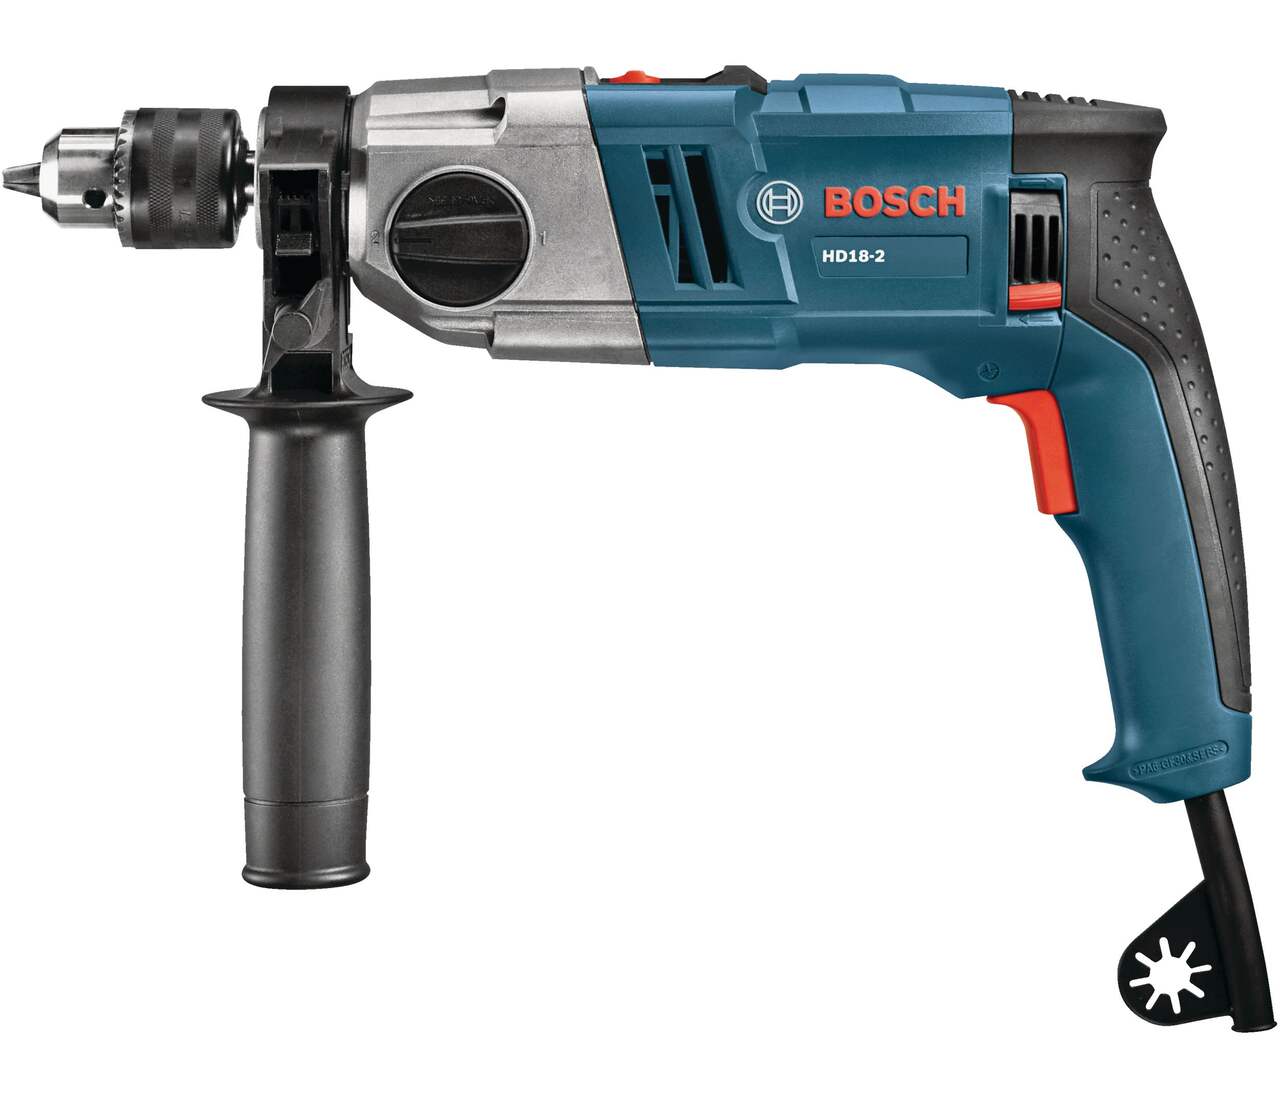 Ces 5 outils Bosch sont actuellement en réduction ! - La DH/Les